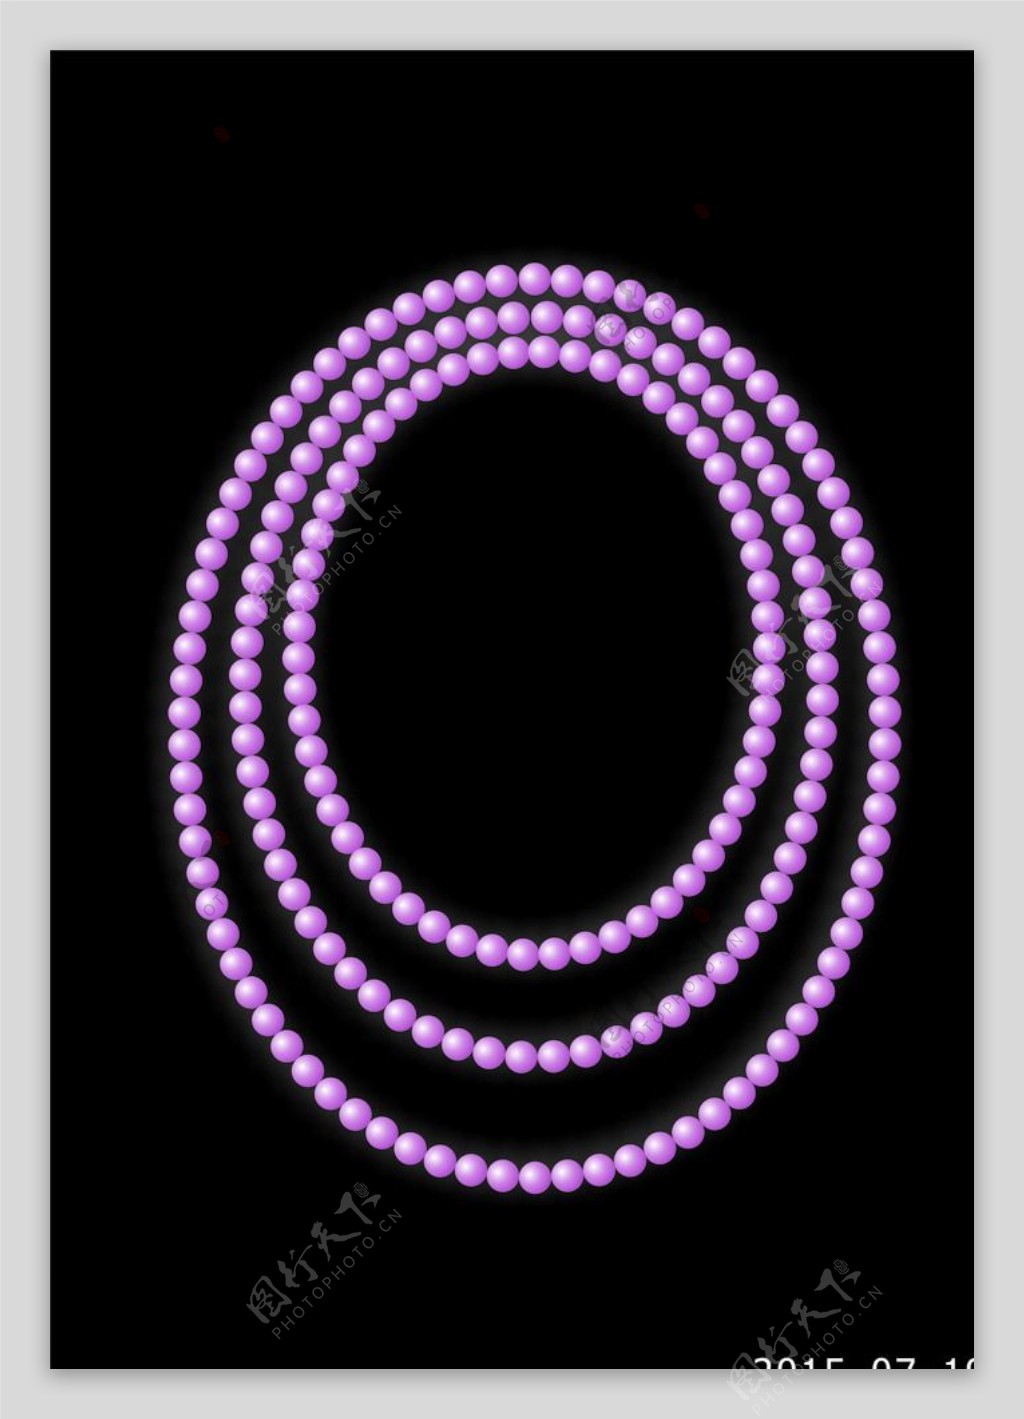 绘制眩目的紫色珍珠项链图片